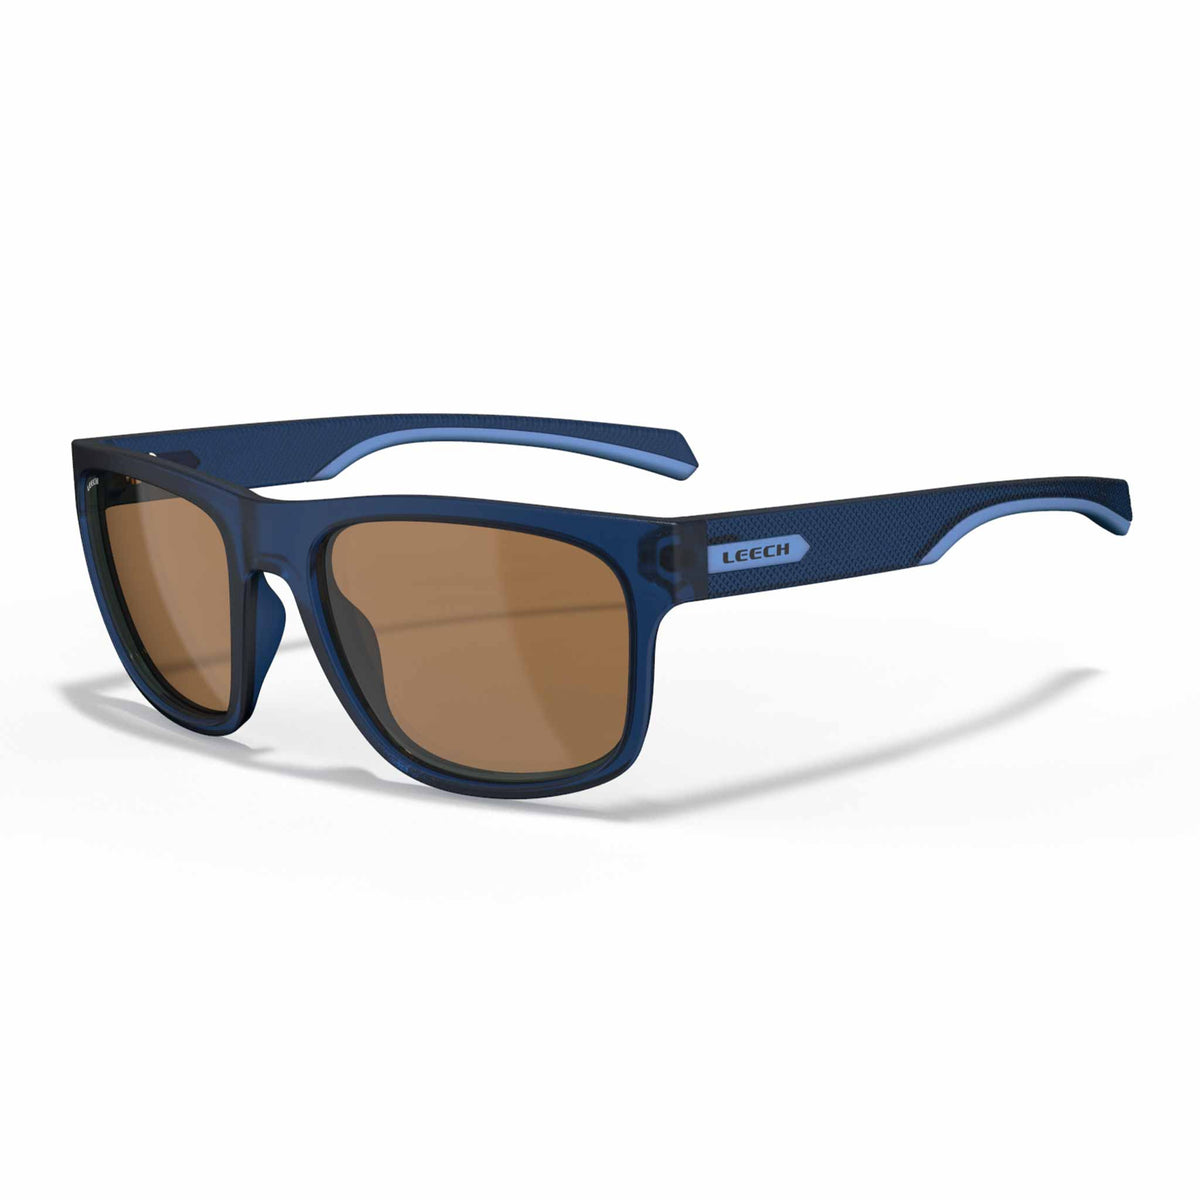 Leech Eyewear REFLEX REFLEX BLUE Sunglasses